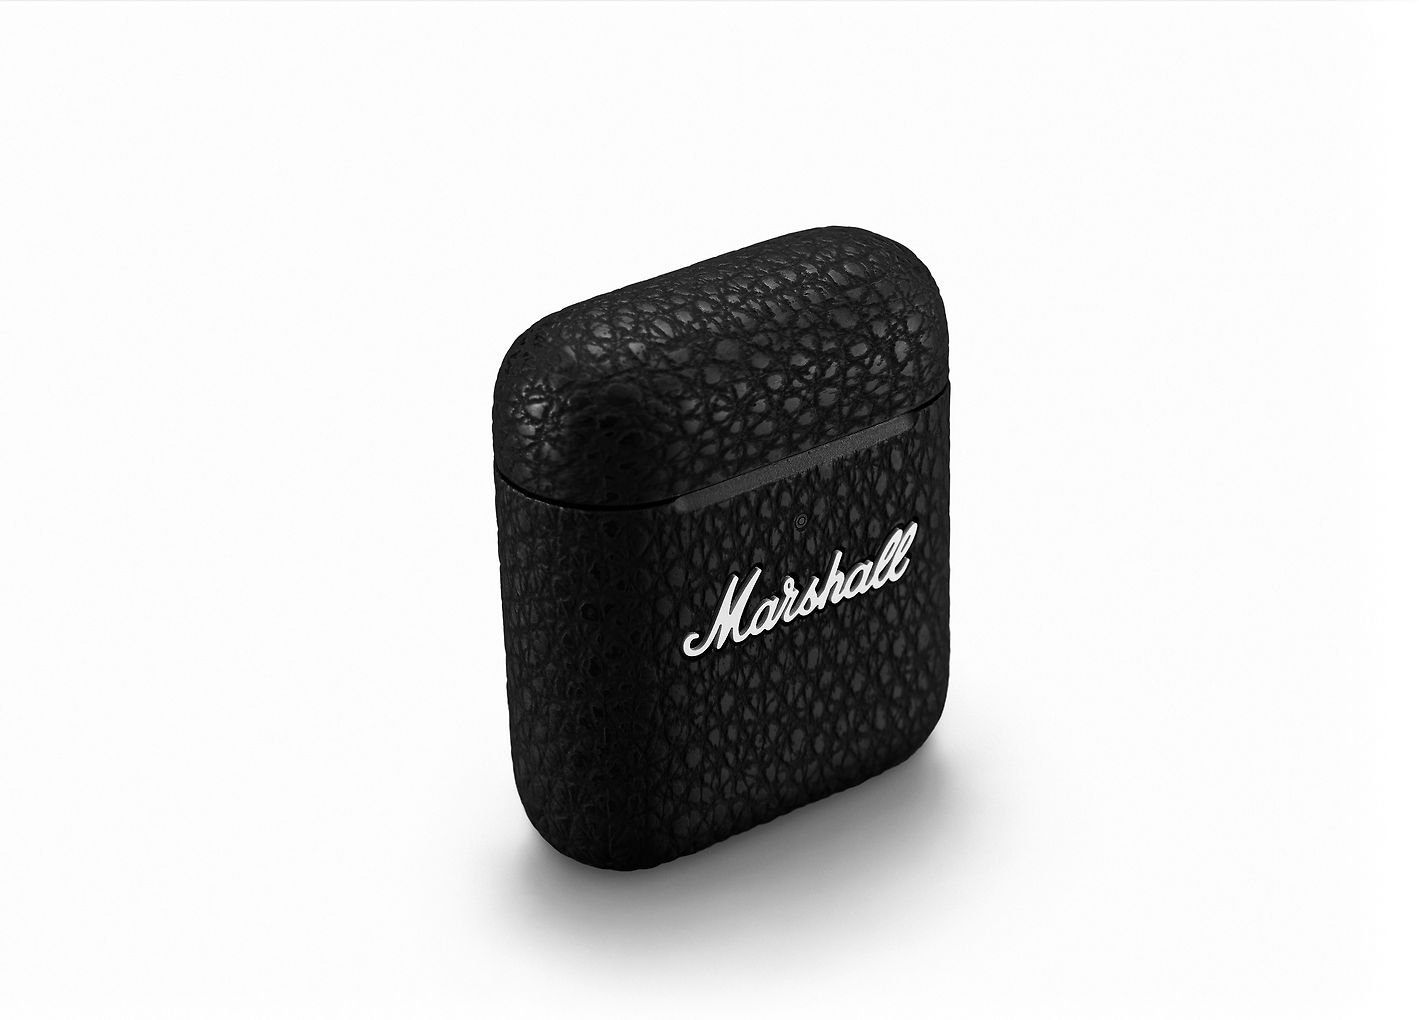 Marshall Minor III In-Ear Headset - Svart